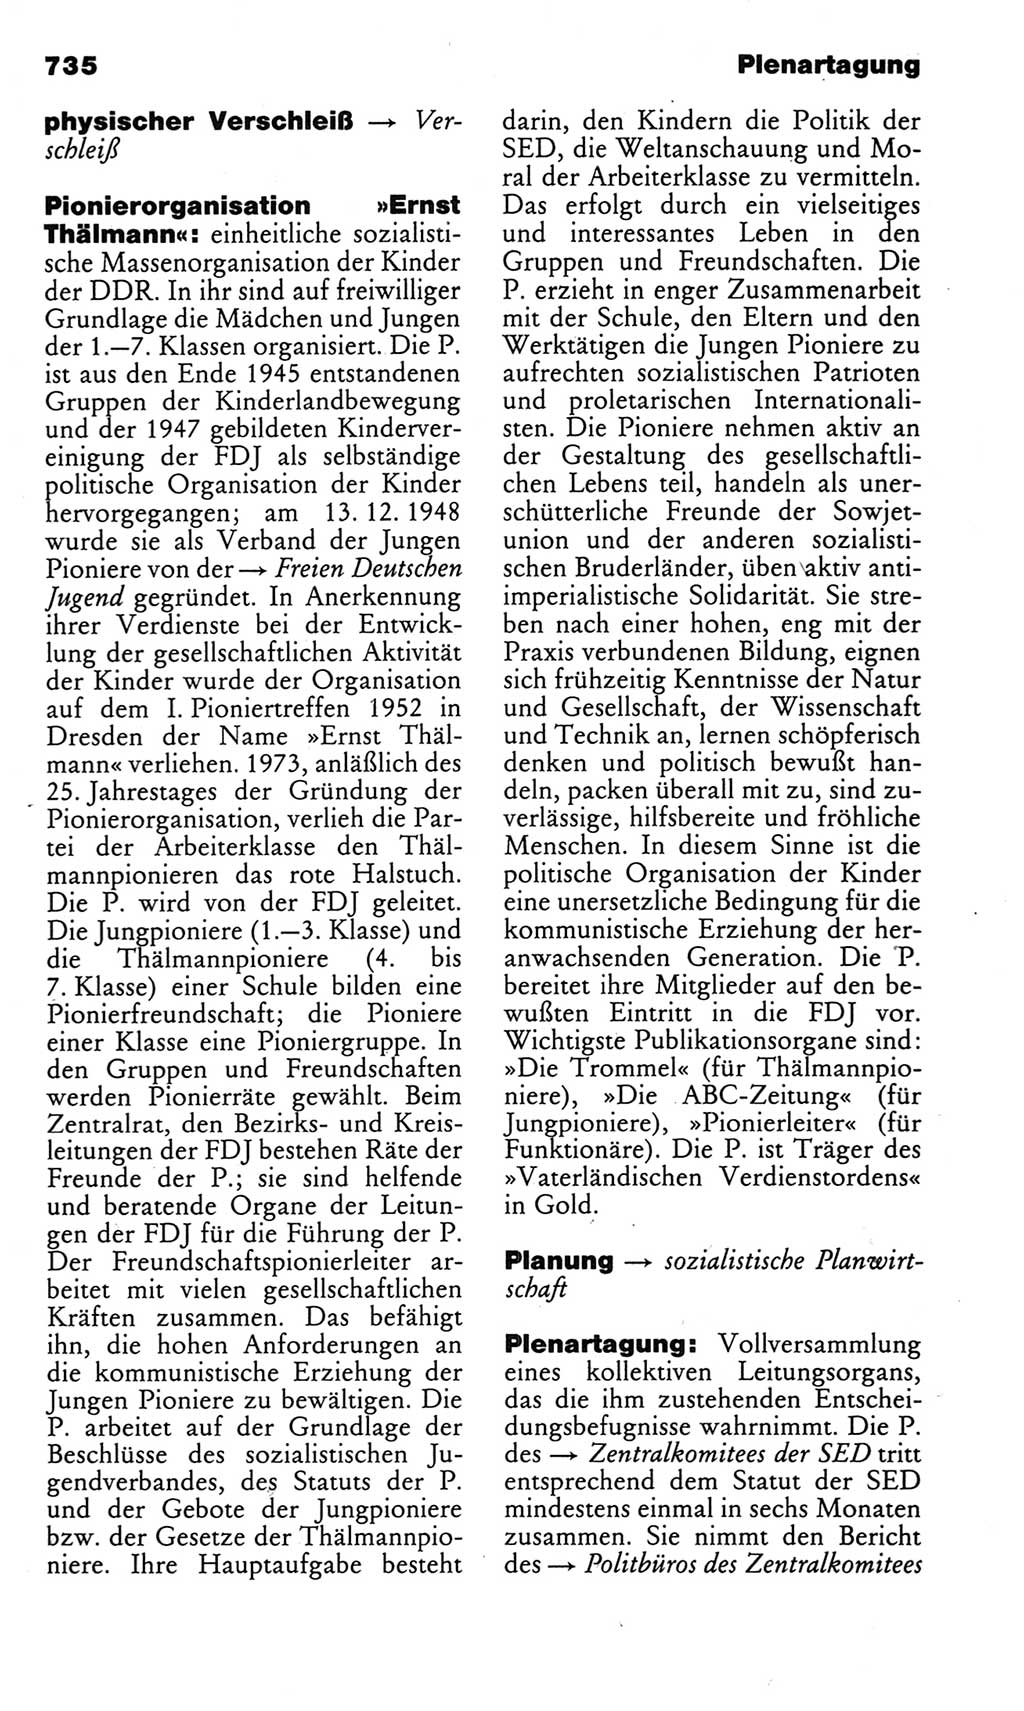 Kleines politisches Wörterbuch [Deutsche Demokratische Republik (DDR)] 1983, Seite 735 (Kl. pol. Wb. DDR 1983, S. 735)